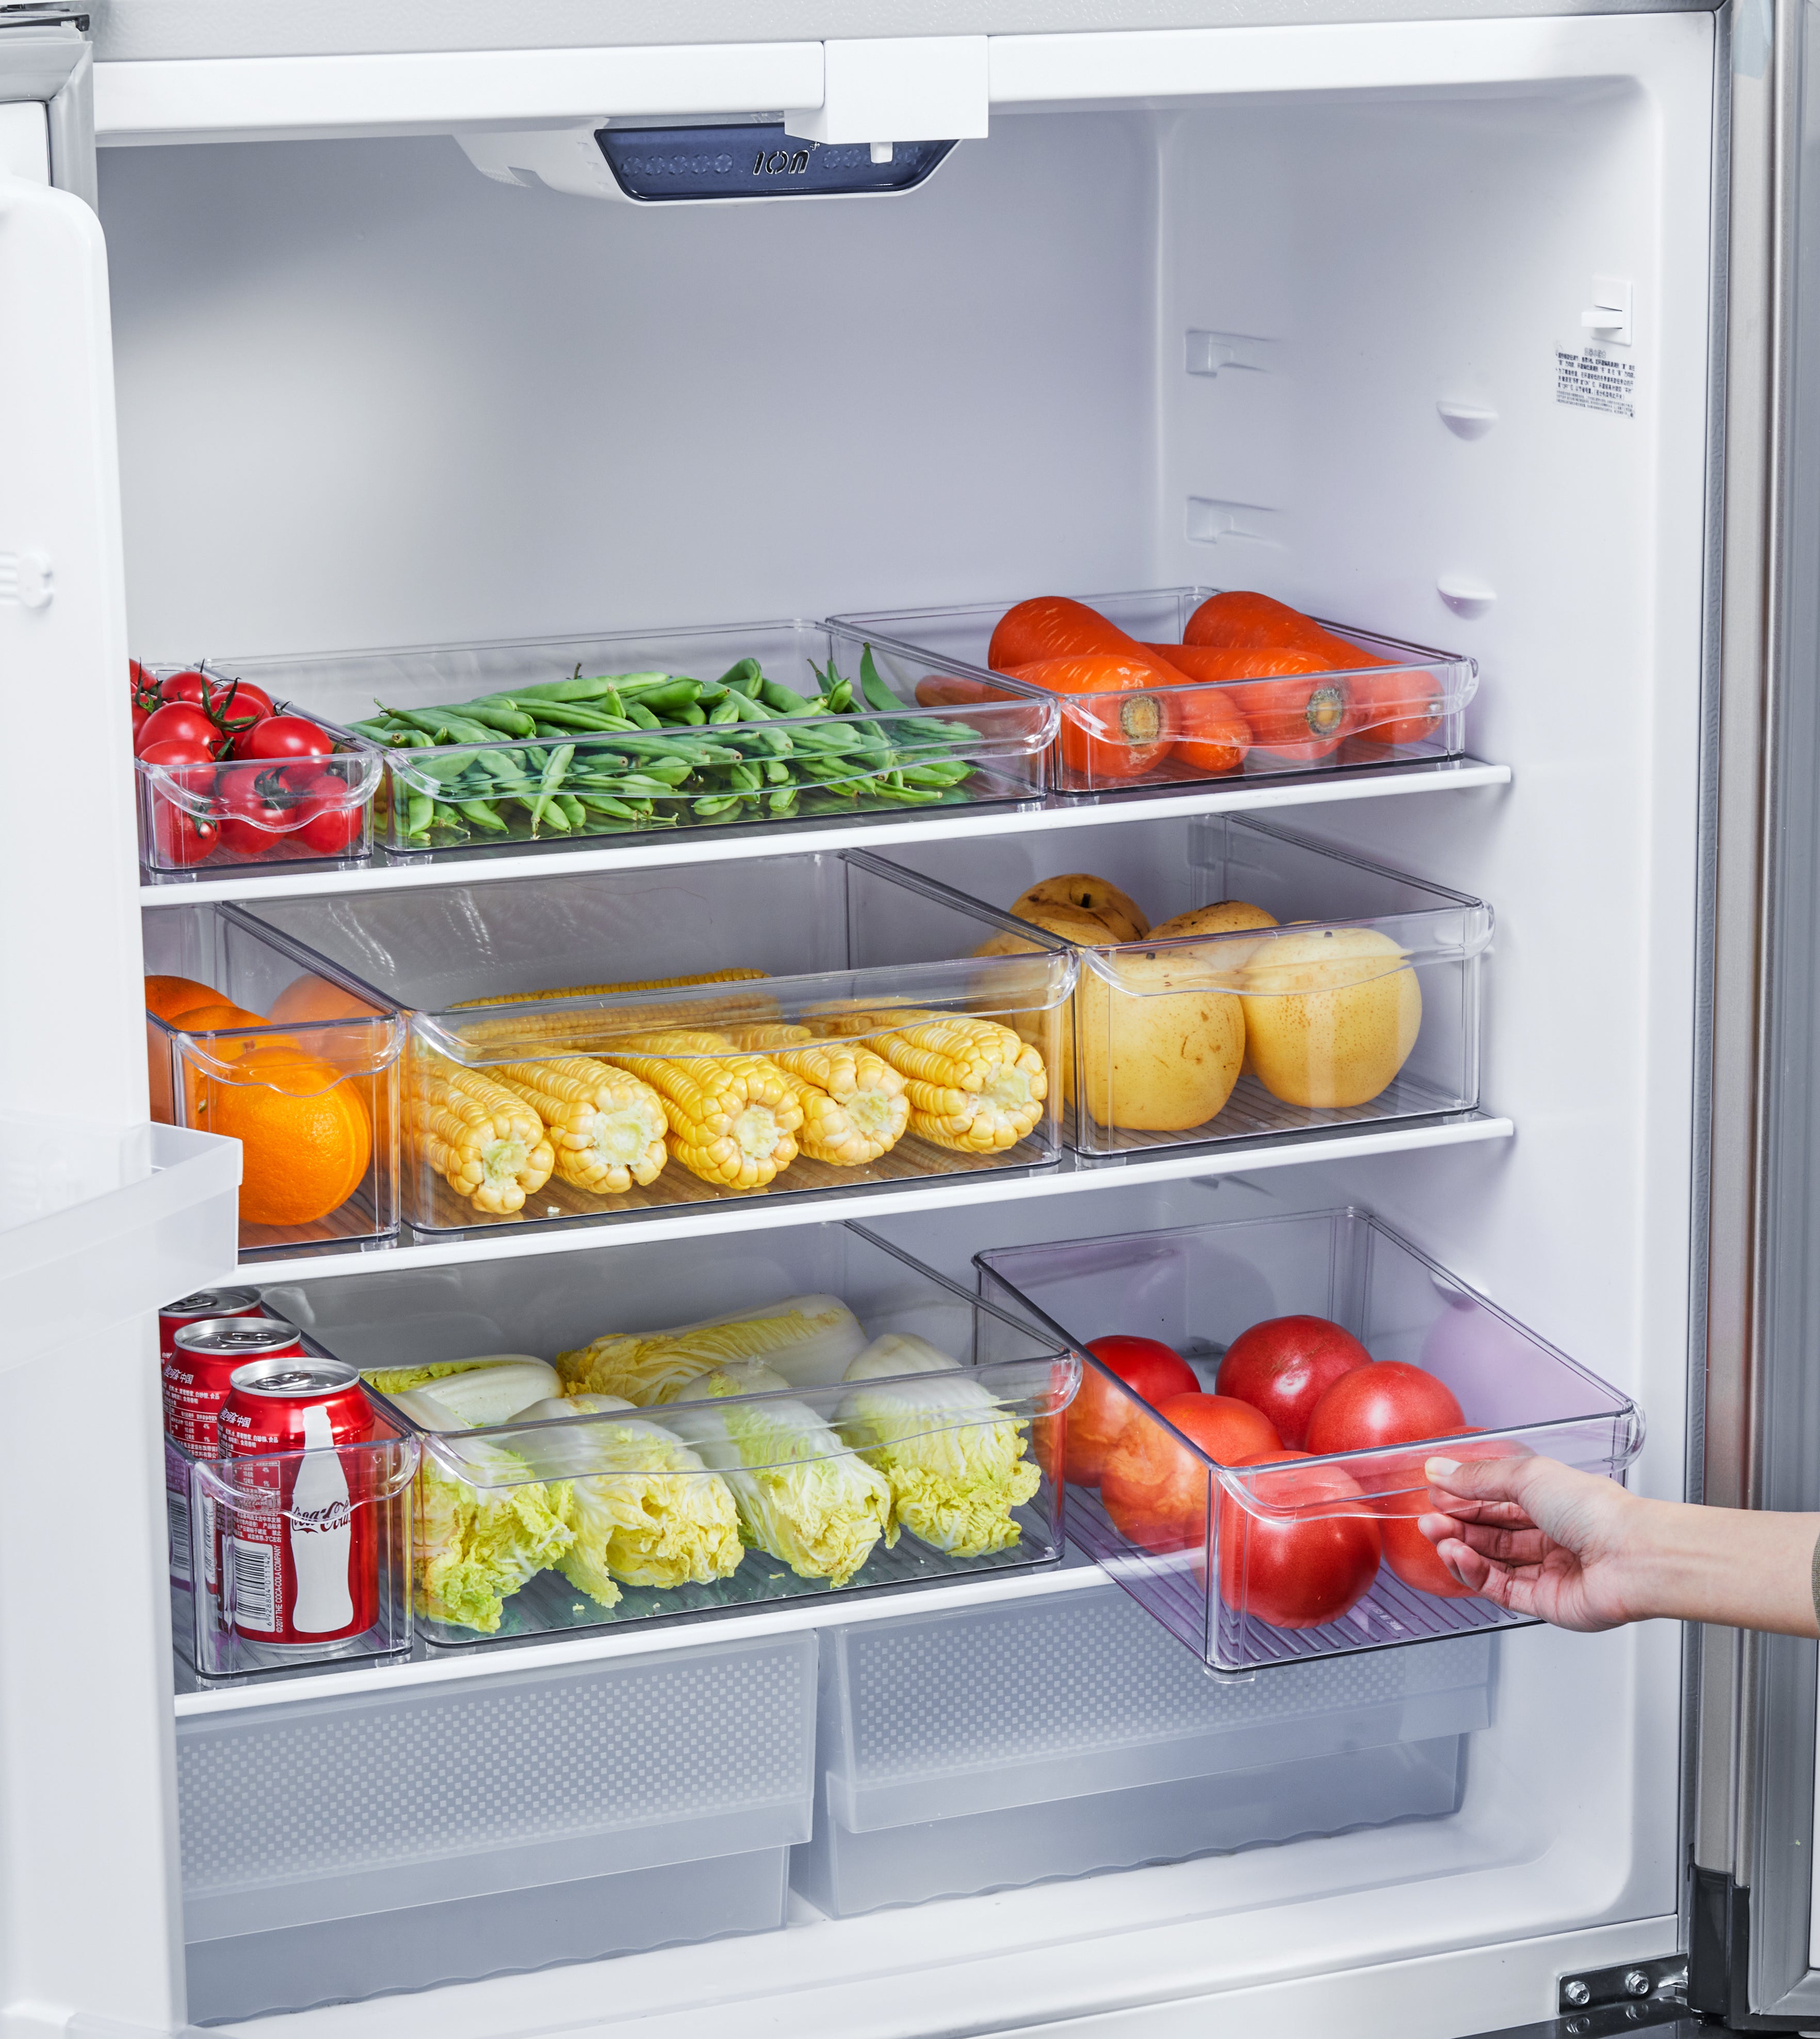 Refrigerador y Despensa 30*20.3*5 - Kio Chile